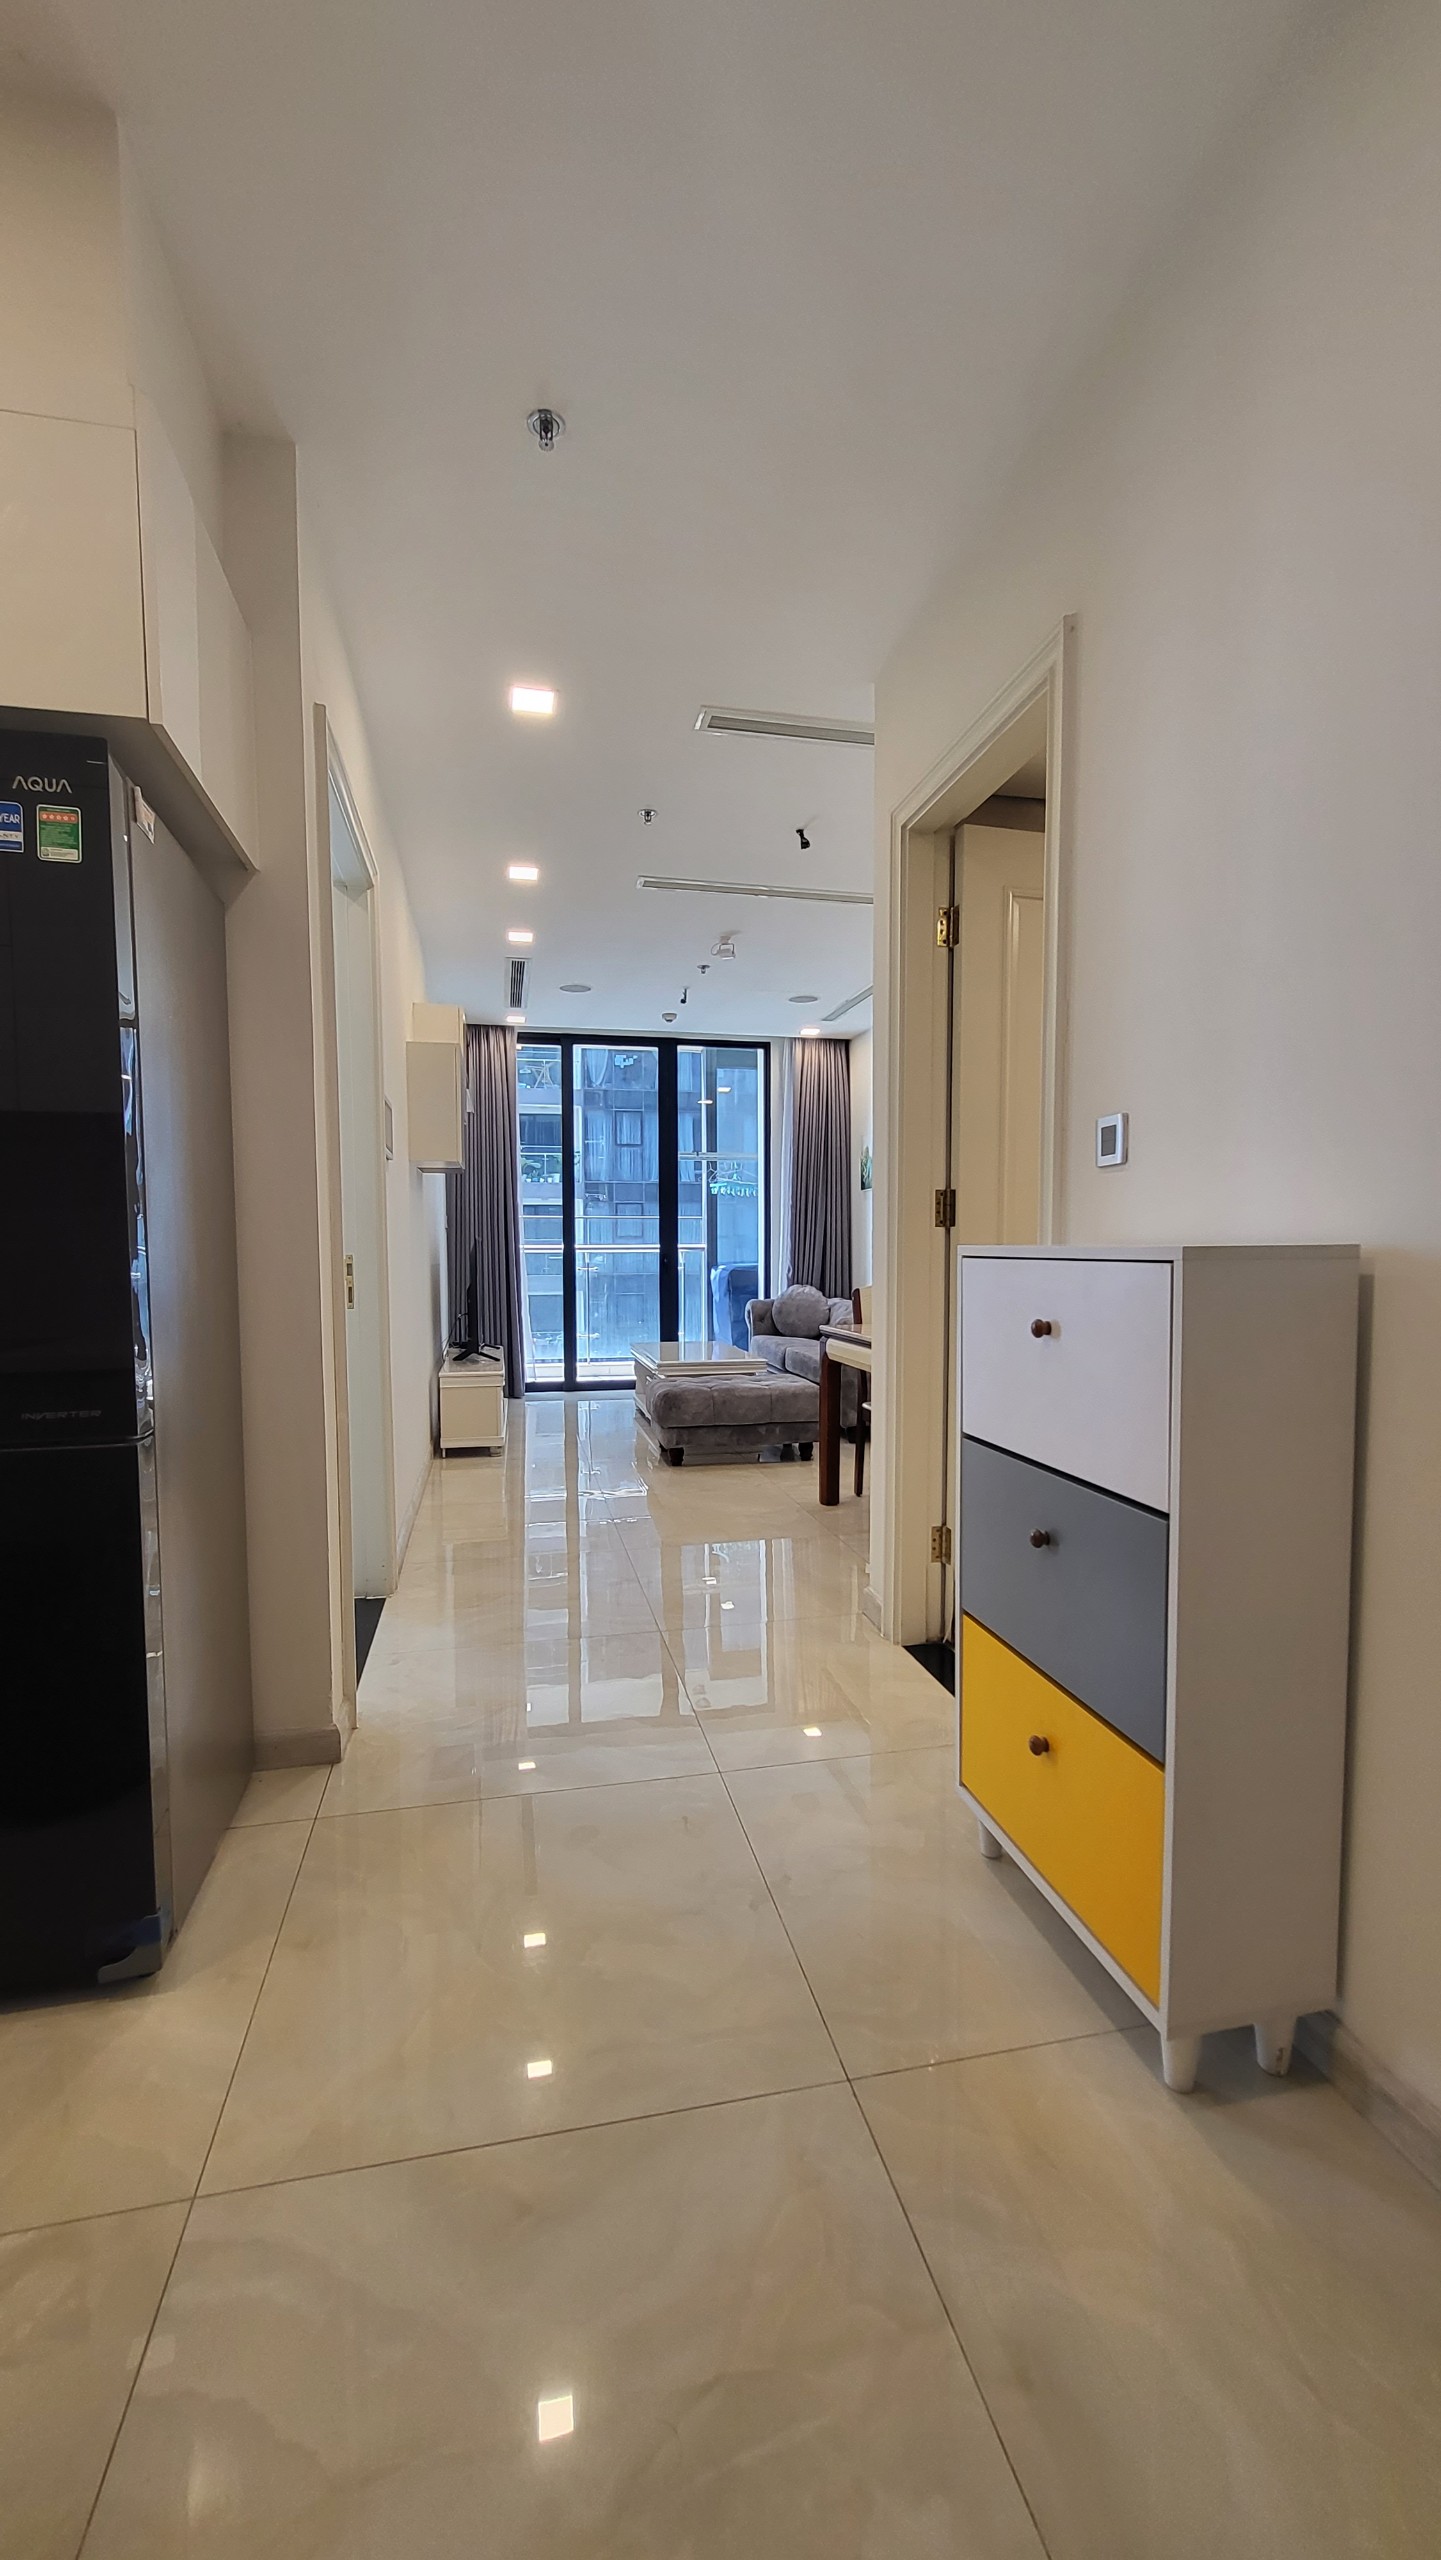 Vinhomes Golden River - Cho thuê căn hộ thông minh, tối ưu không gian, giúp tiết kiệm chi phí